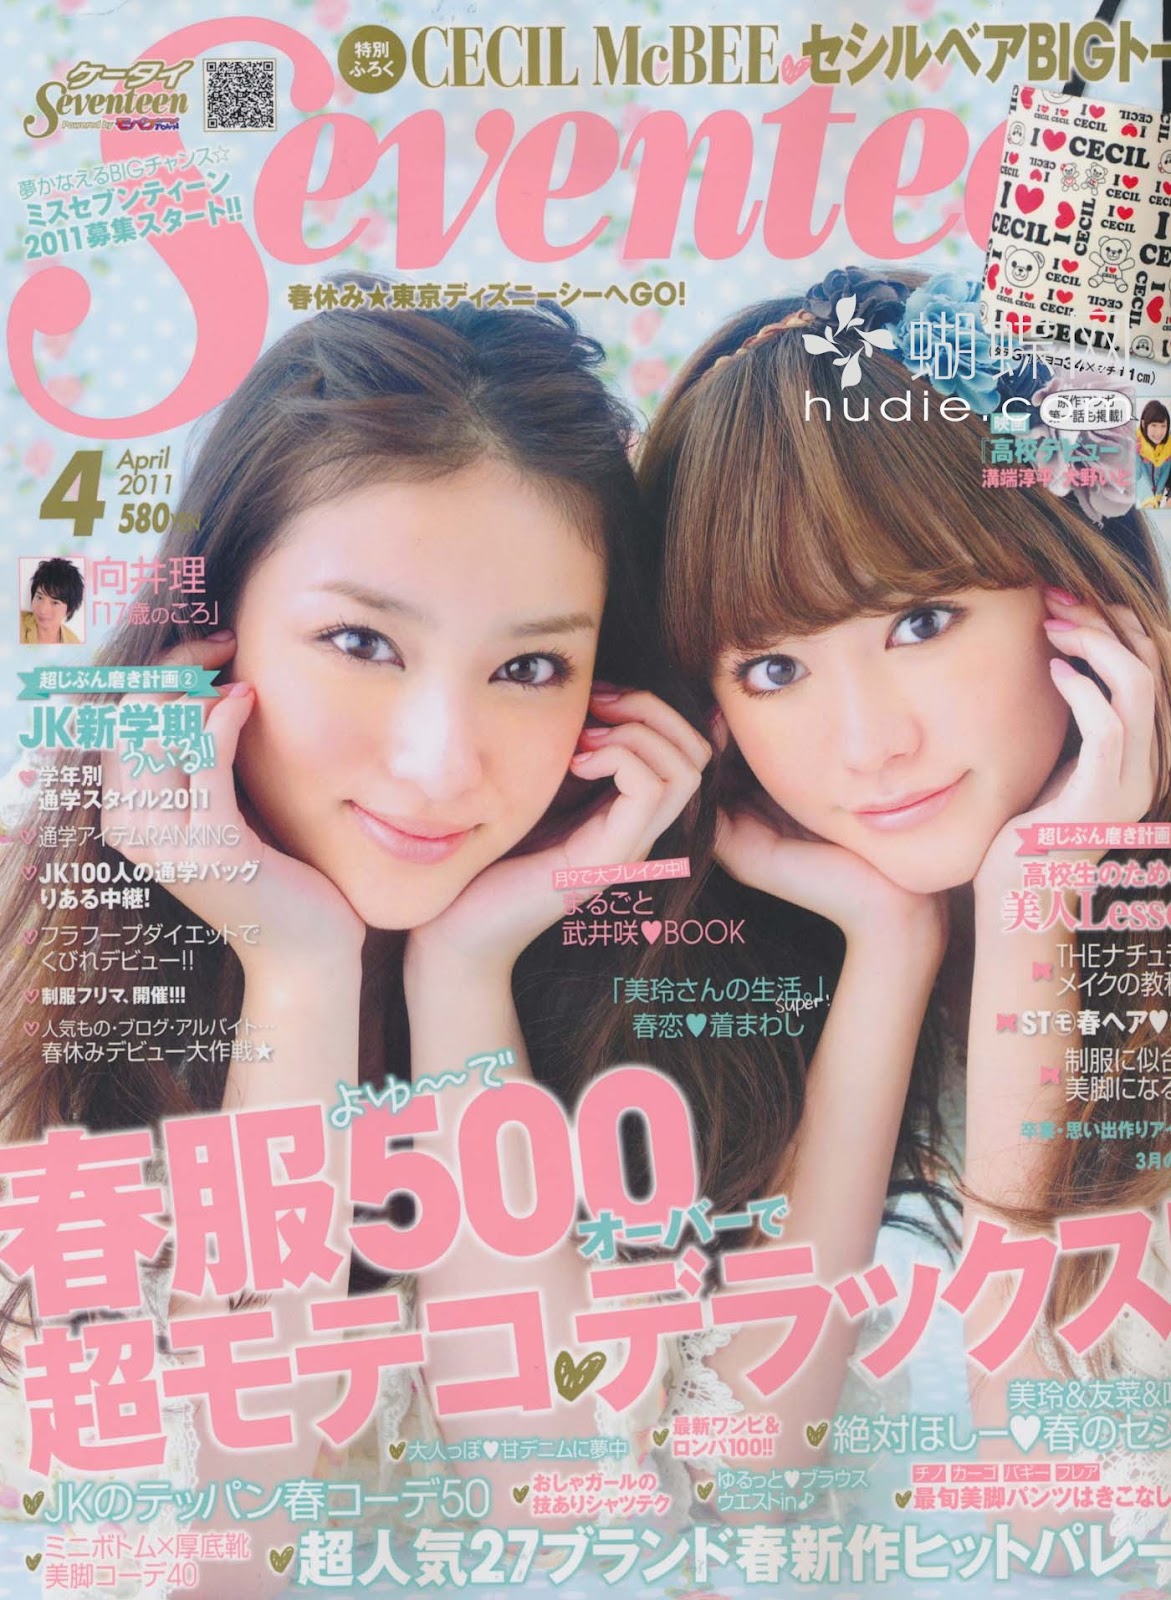 seventeen japan april 2011 magazine scans